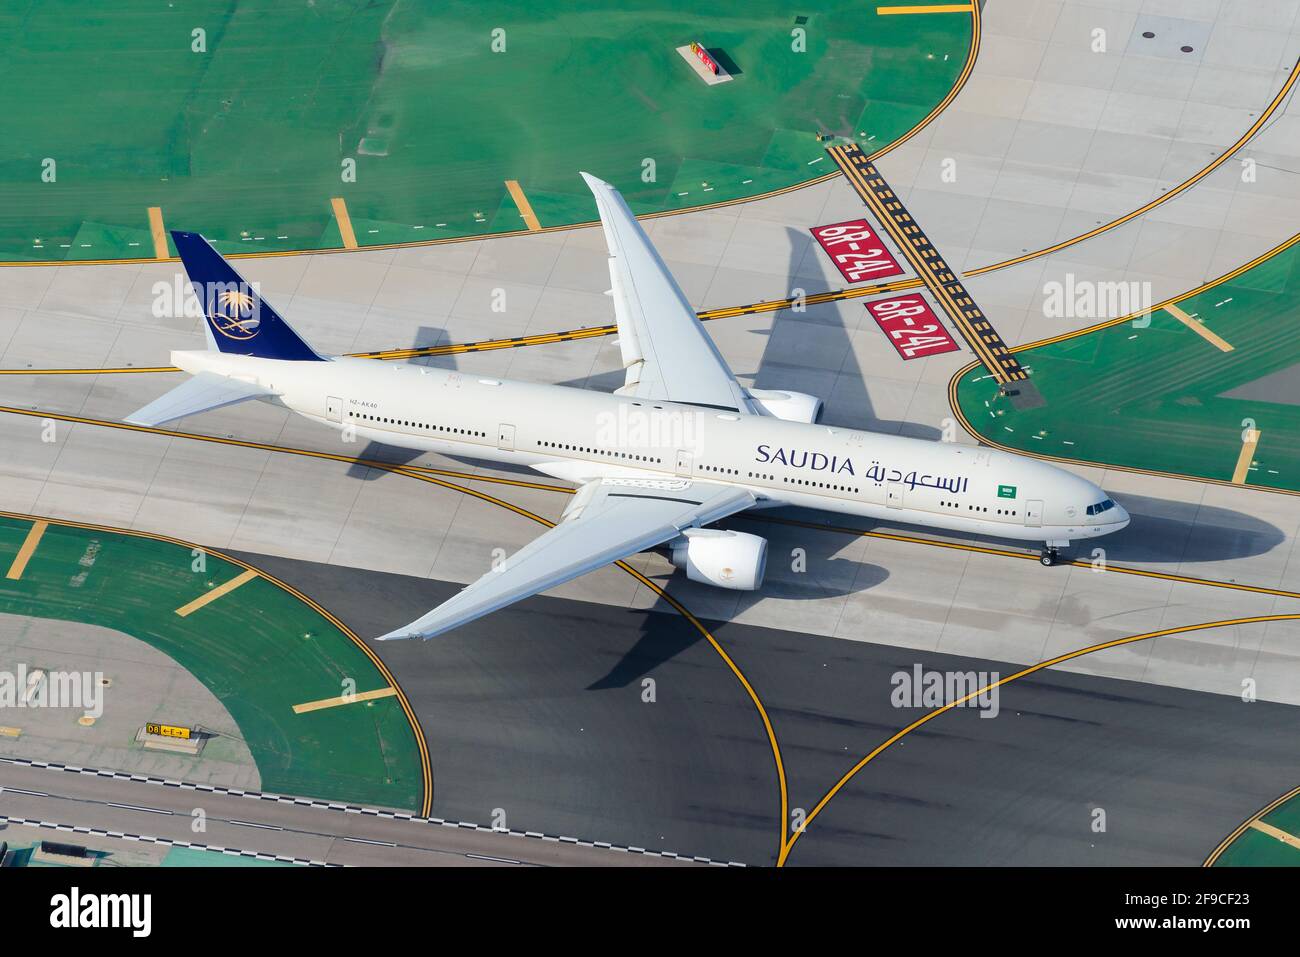 Saudi Arabian Airlines Boeing 777 rollt am LAX Airport. Boeing 777-300 Flugzeug HZ-AK40 Luftaufnahme. Flugzeug von Saudia Airlines. Stockfoto